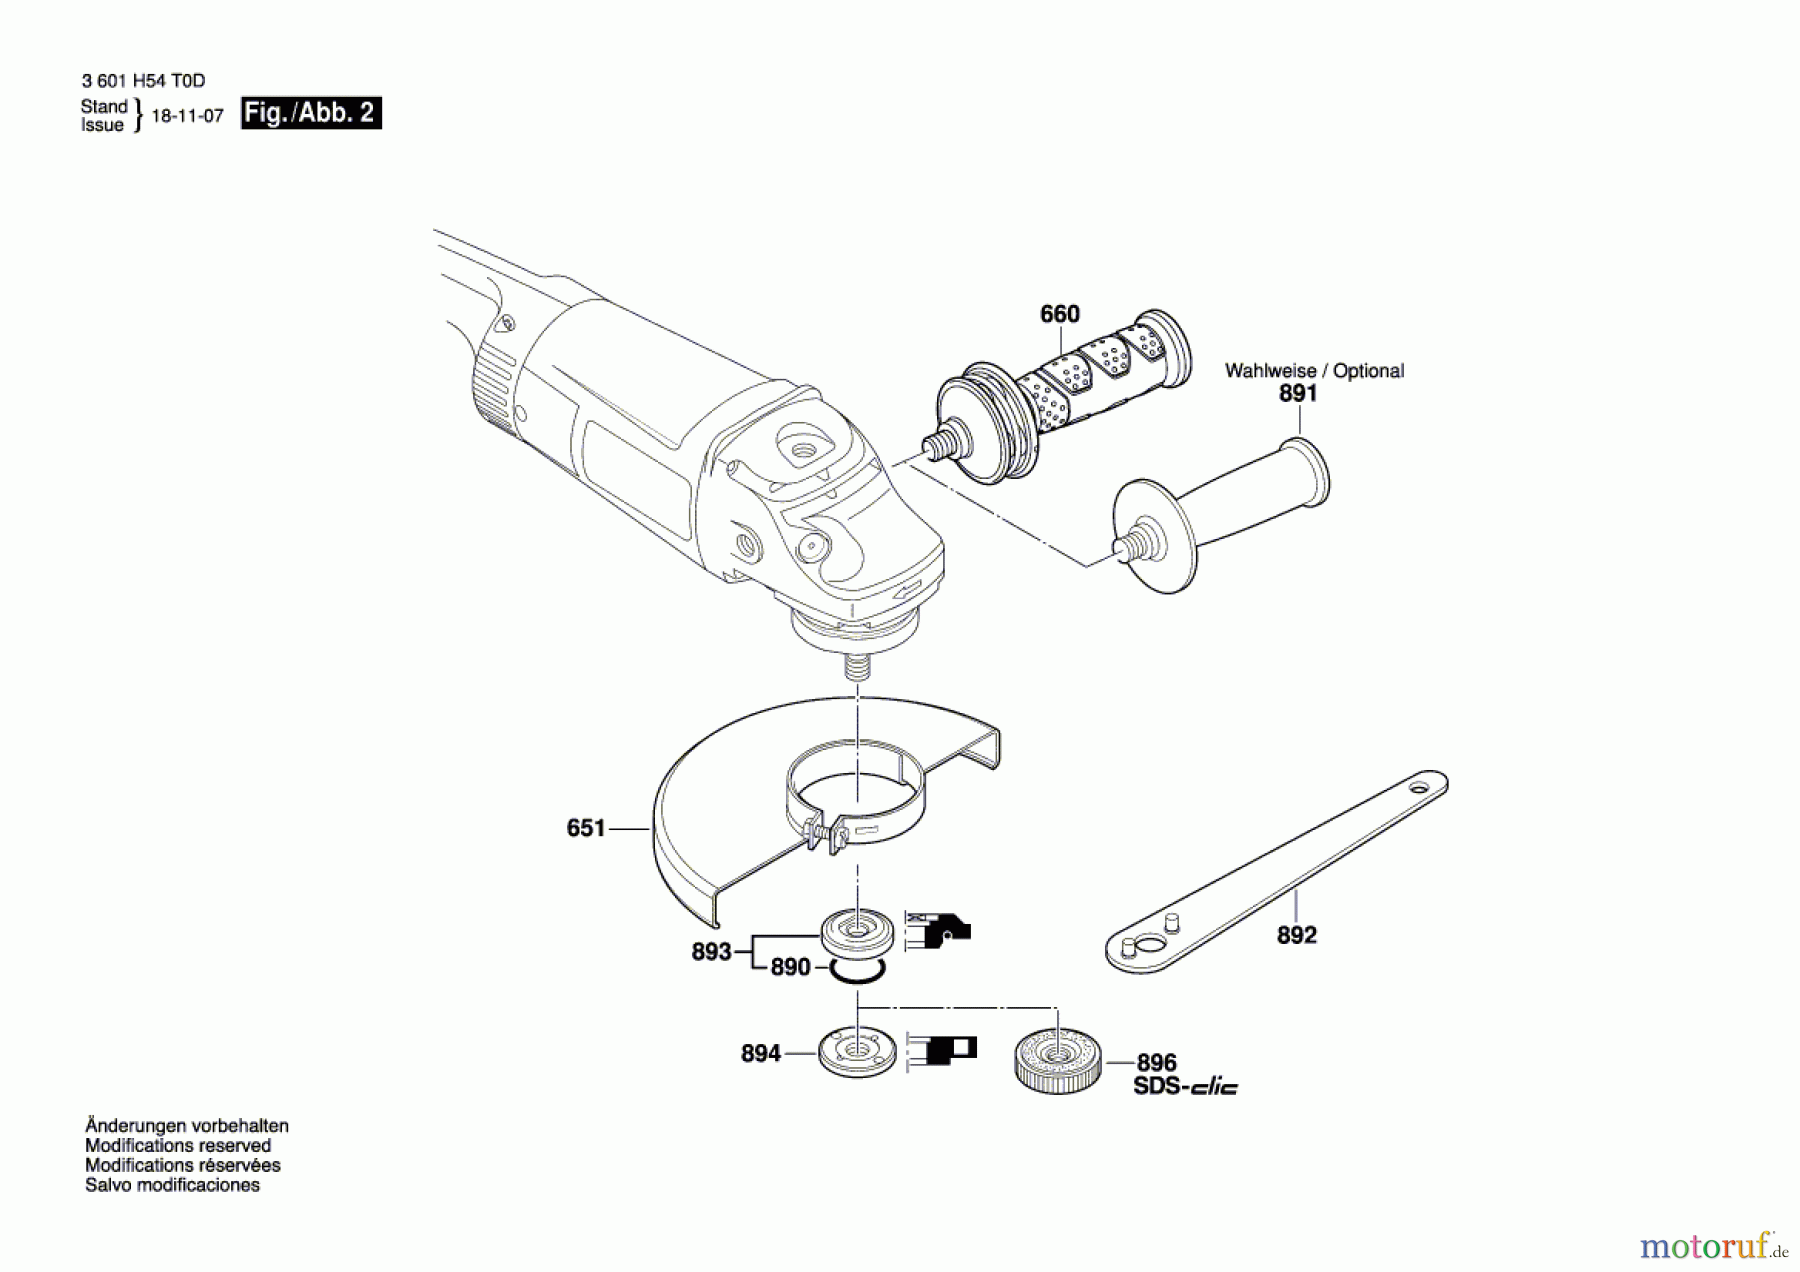  Bosch Werkzeug Winkelschleifer BAG 230-1 CLB Seite 2